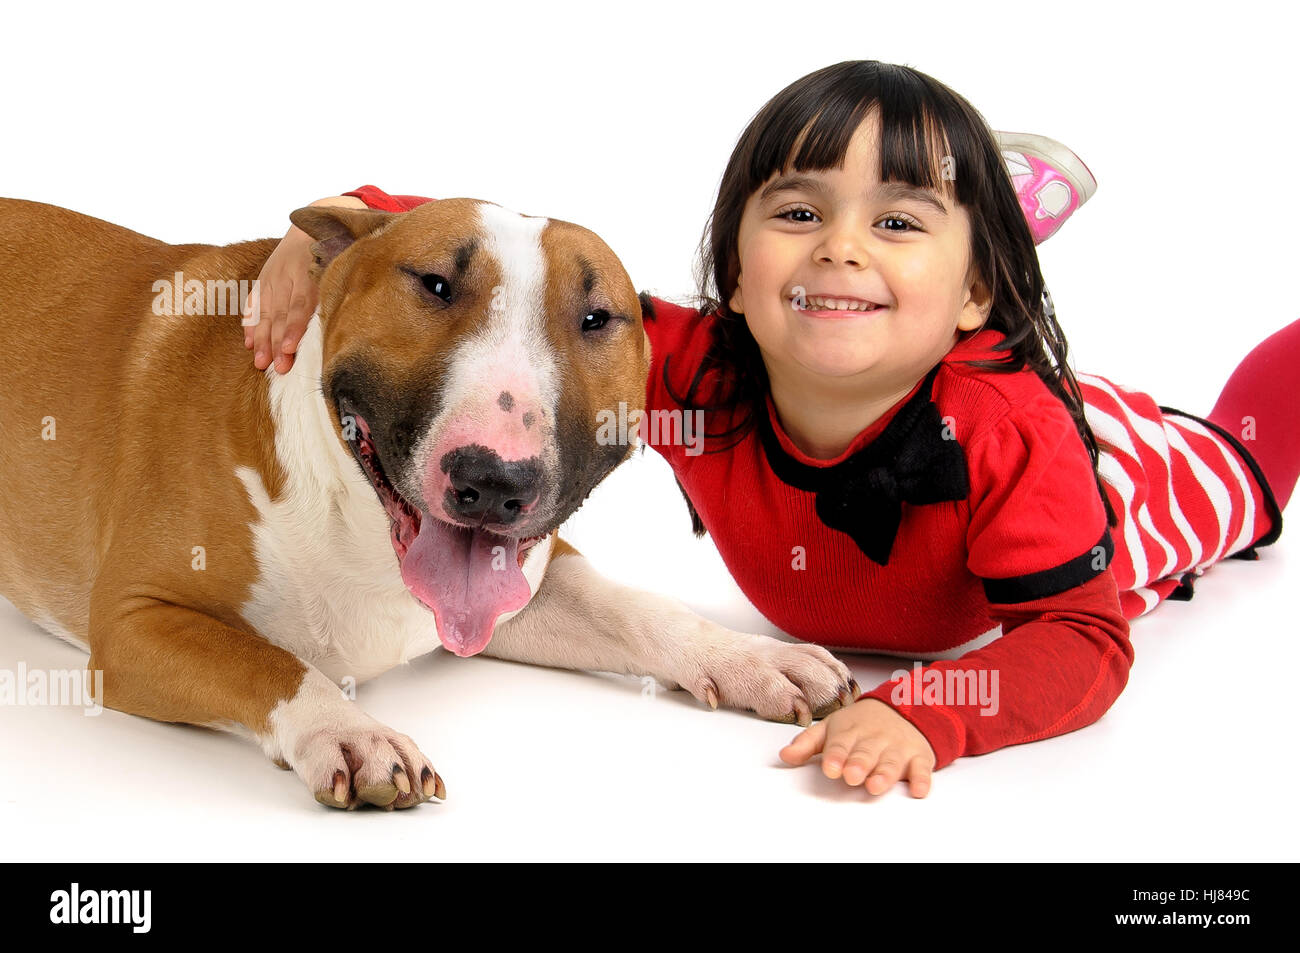 Amicizia, cane, canine, bambino, ragazza, ragazze, bambini, bambini, amici, Foto Stock